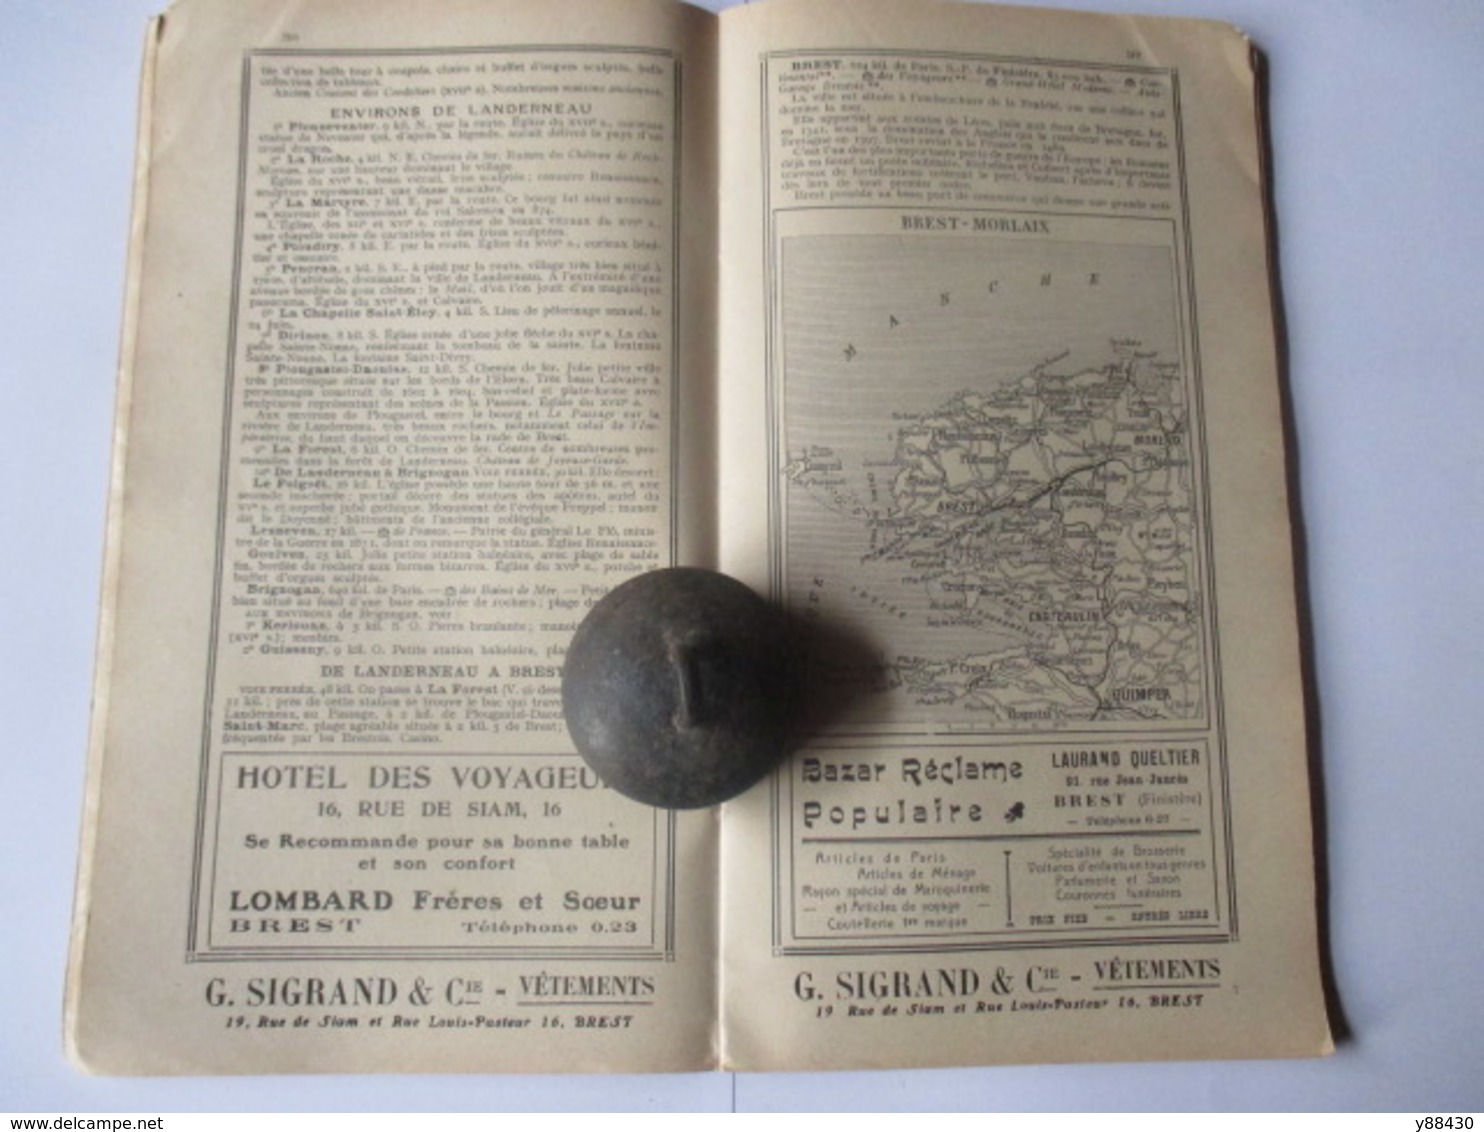 Livret Guides du Touriste THIOLIER de 1922 - LA BRETAGNE - du Mont St Michel à Brest et Nantes - 98 pages - 17 photos